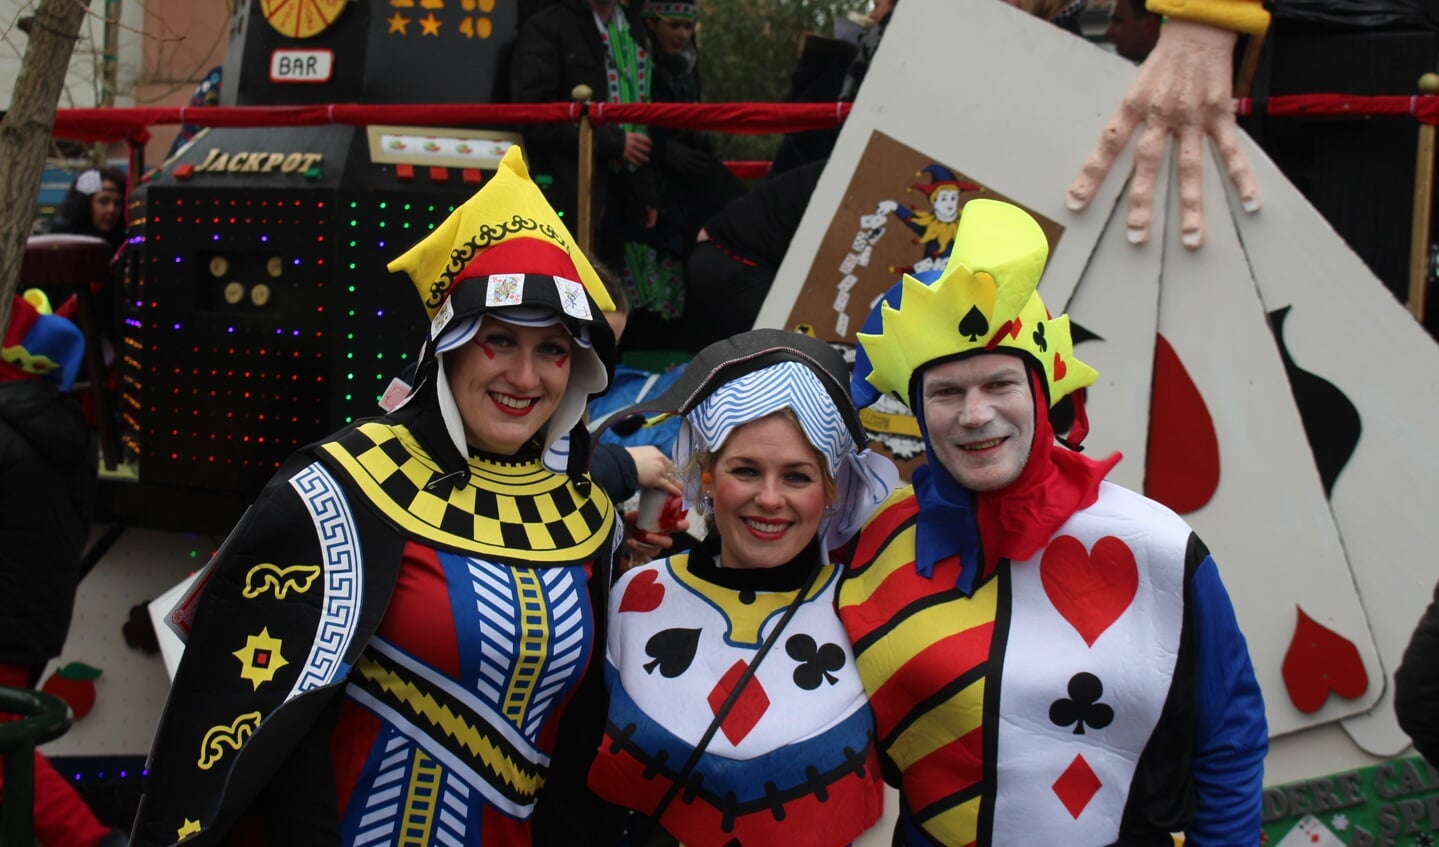 Leden van de Carnavalsvereniging Hillegom haalden twee keer de eerste prijs. 